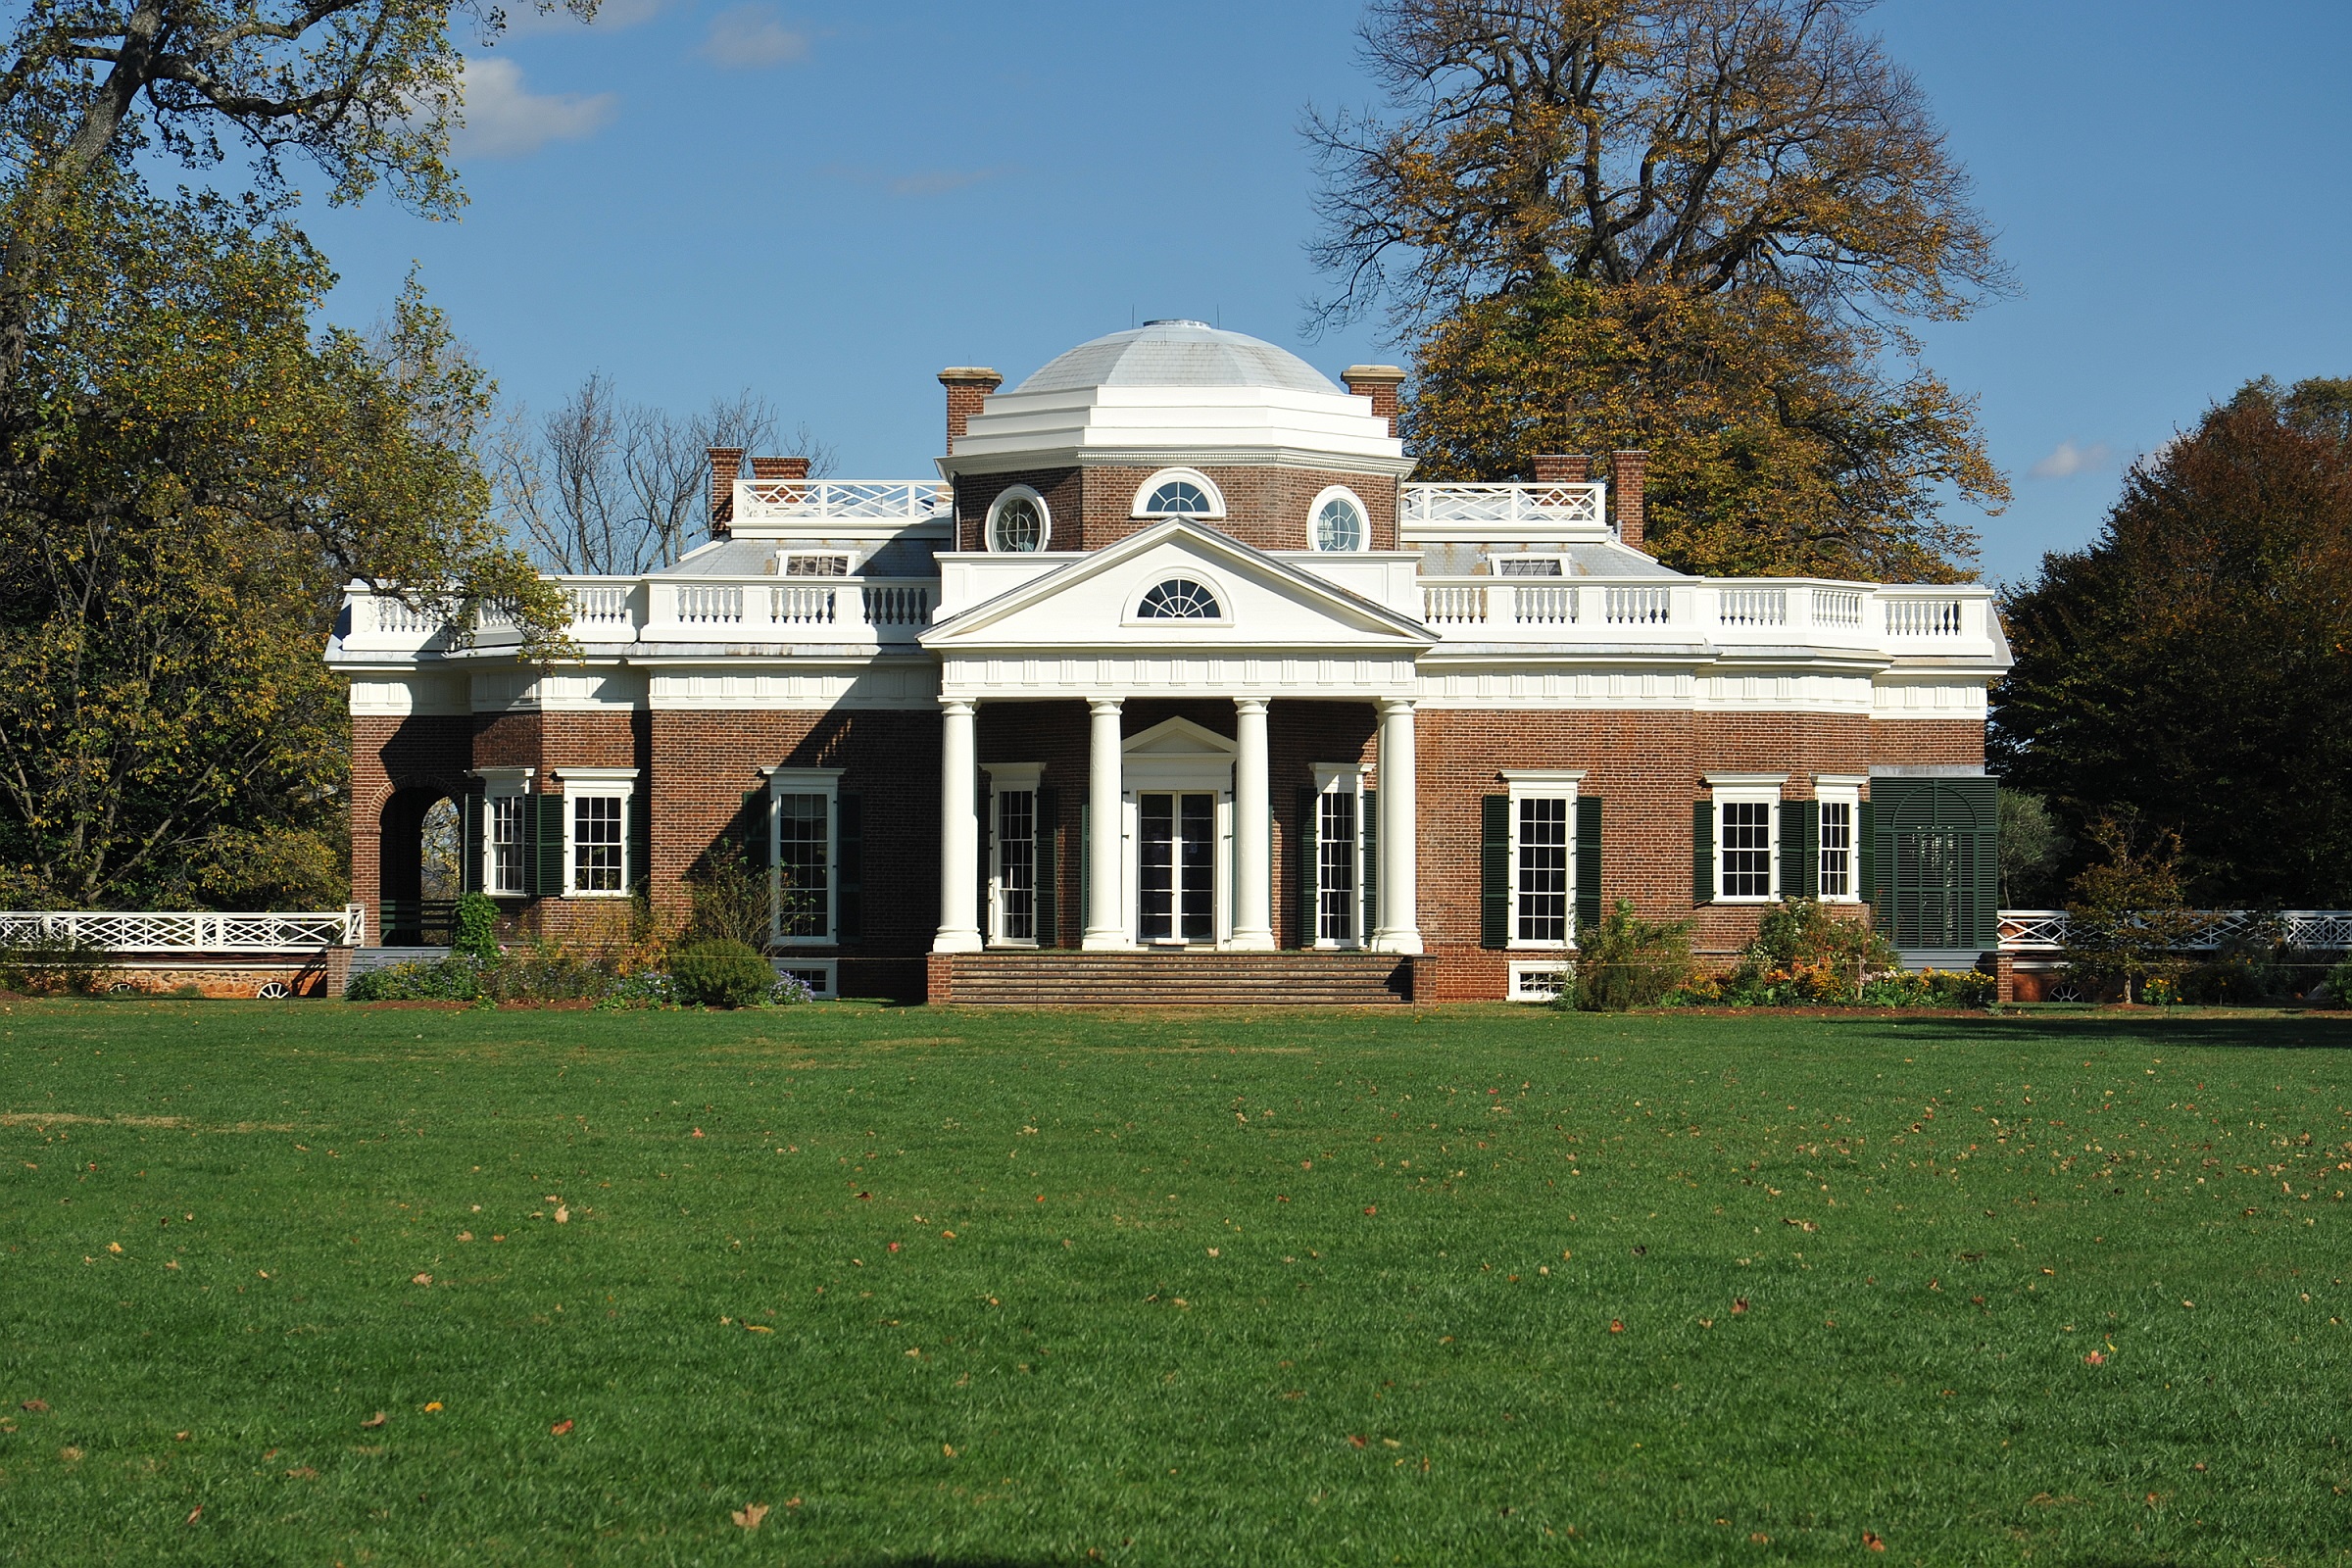 Monticello, projetada por Thomas Jefferson, é um exemplo do resgate da arquitetura neoclássica nos Estados Unidos